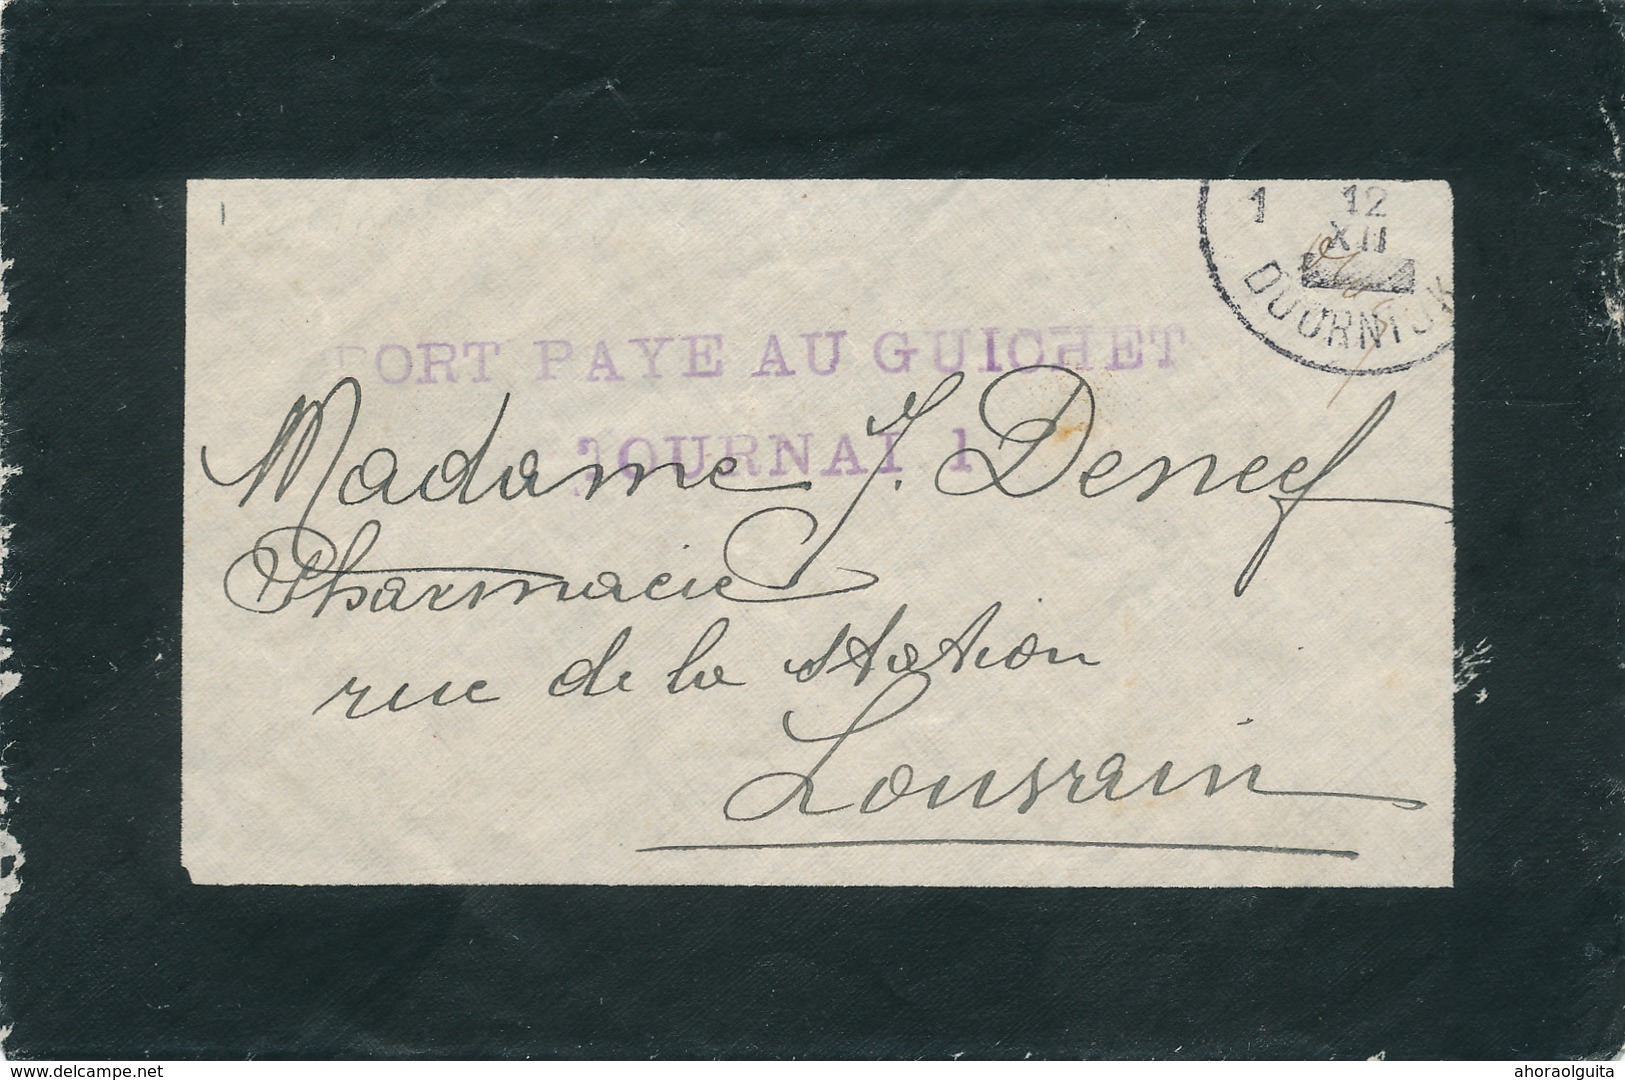 104/29 - Enveloppe De Deuil Cachets De FORTUNE TOURNAI 12 XII (1918) Et Port Payé Au Guichet TOURNAU 1 - Foruna (1919)